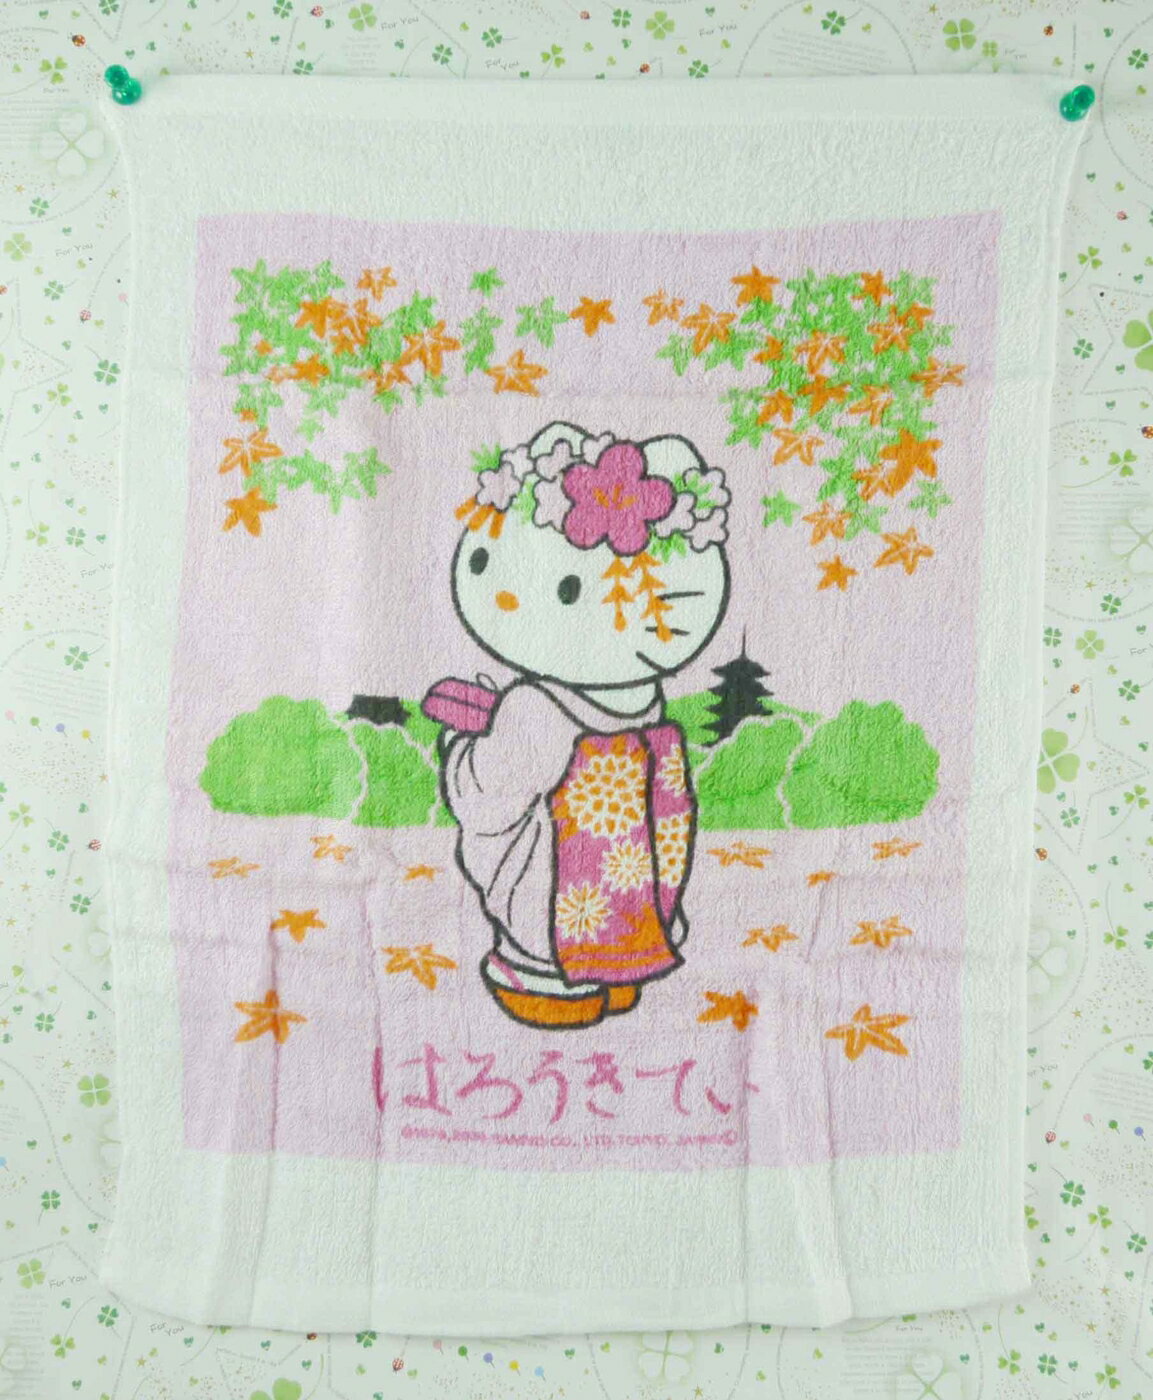 【震撼精品百貨】Hello Kitty 凱蒂貓 方巾/毛巾-粉和服 震撼日式精品百貨